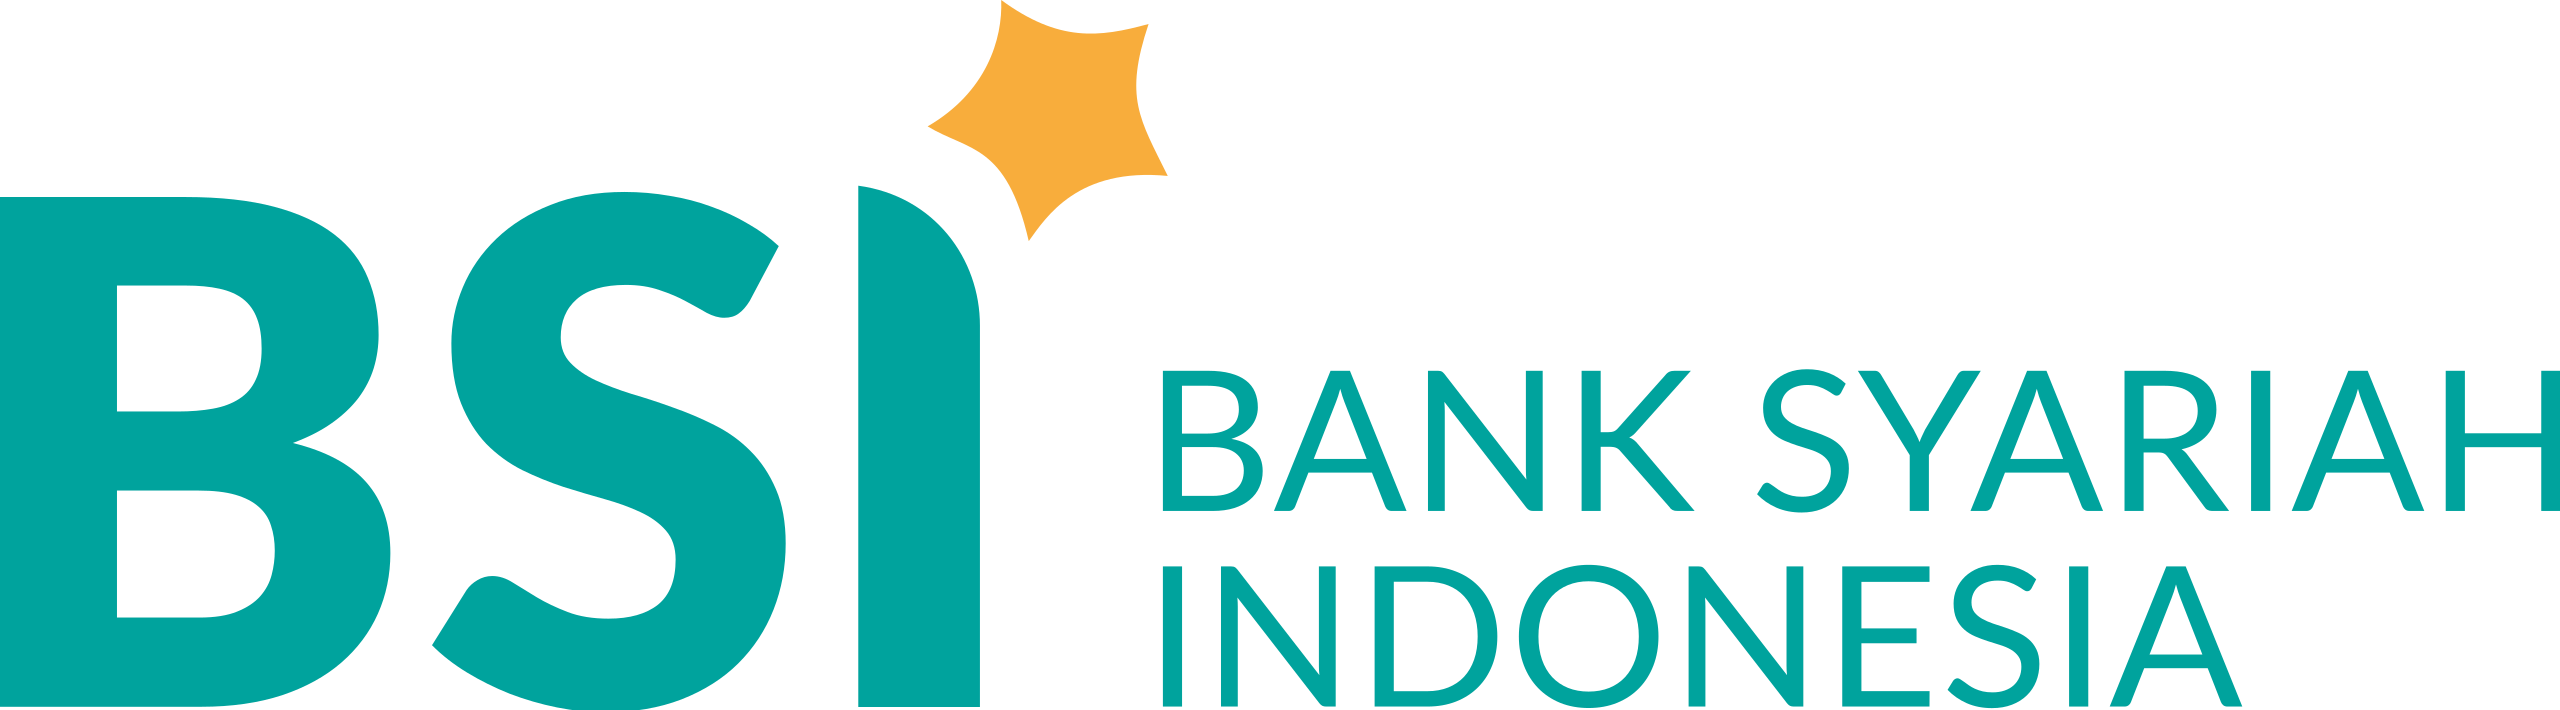 Bank_Syariah_Indonesia.svg.png